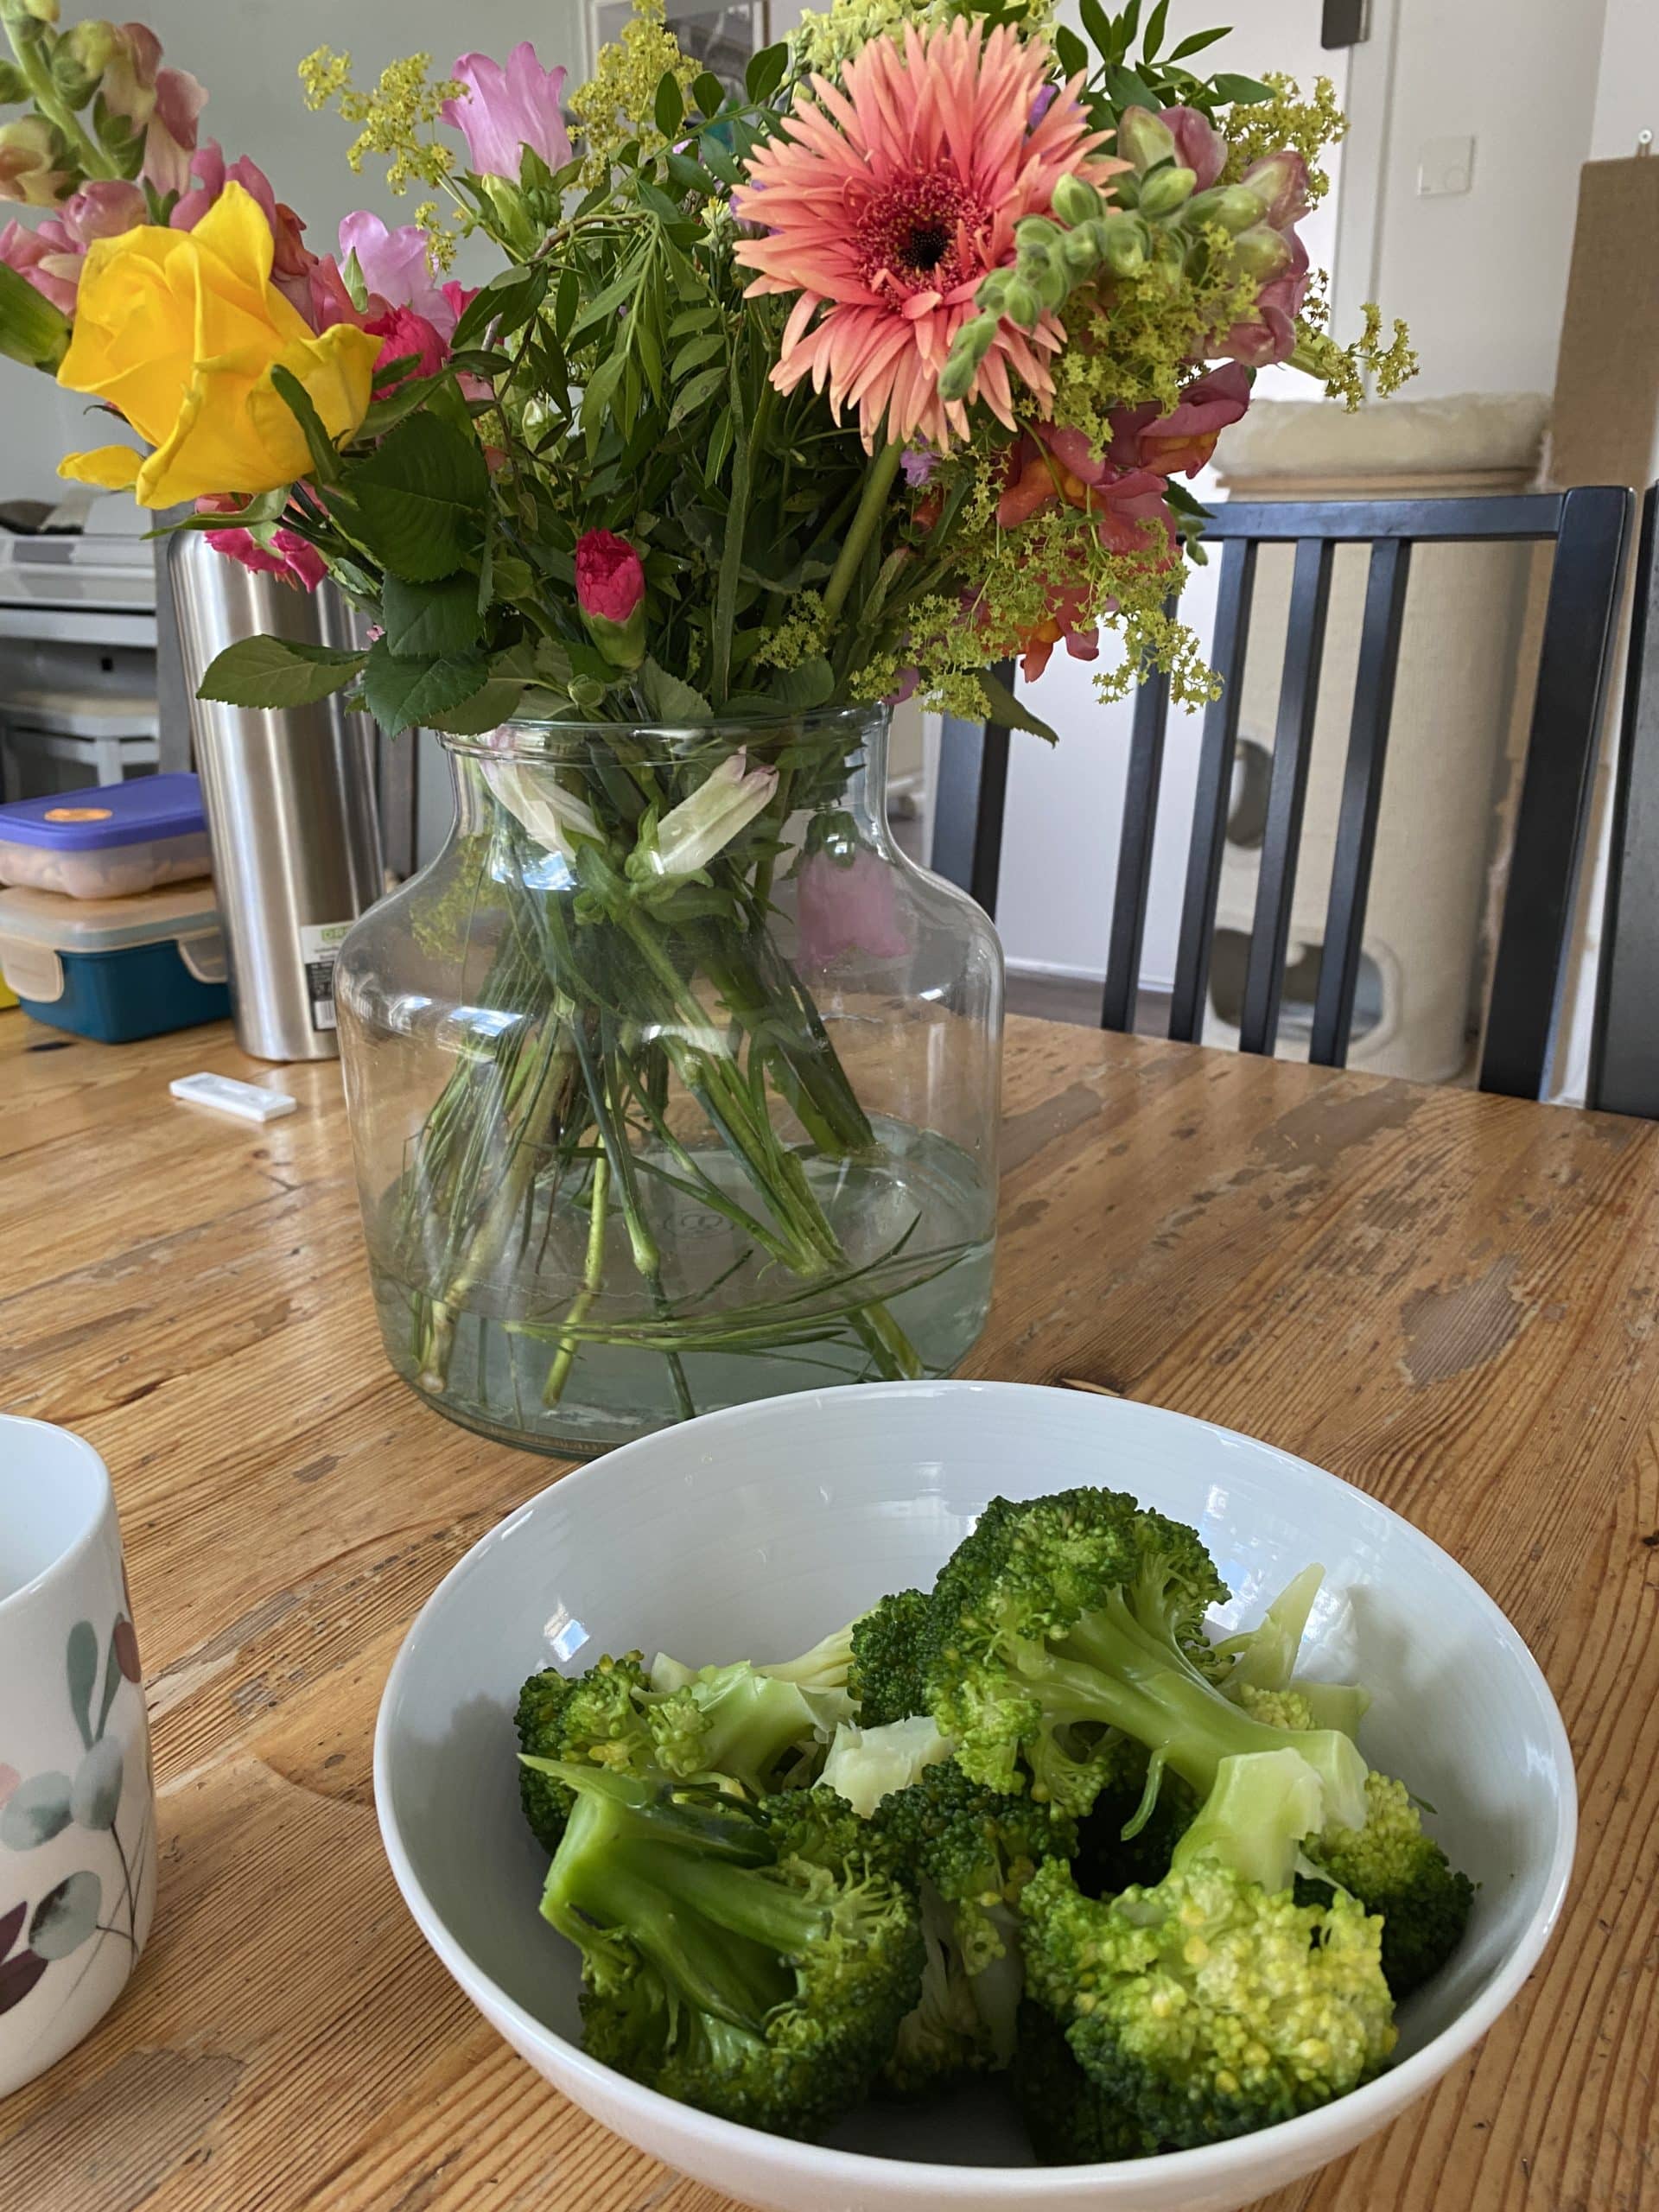 Zum Mittag gibt es gelieferte Blumen und Brokkoli. Ich mag das Grünzeug.